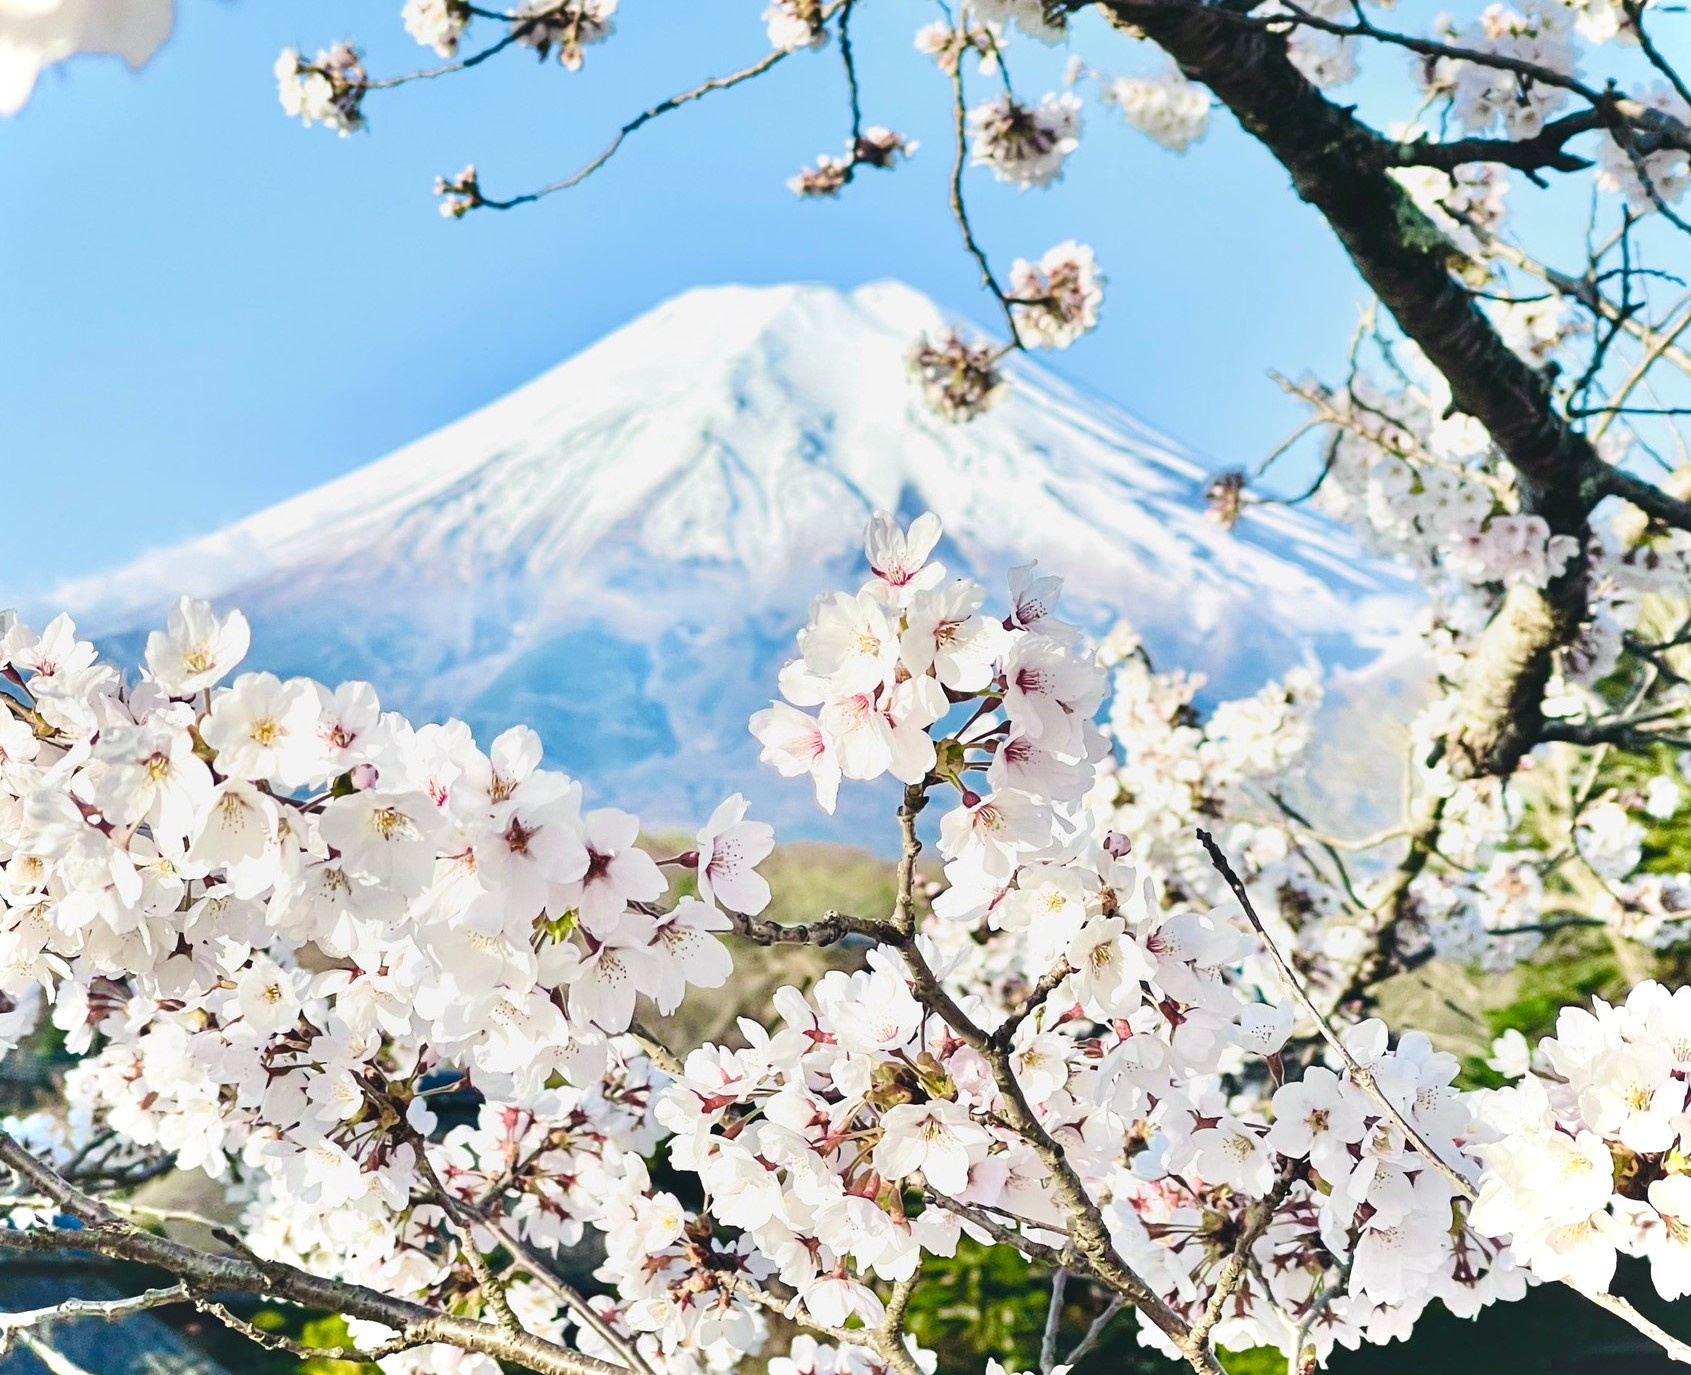 Nếu bạn yêu thích hoa anh đào Nhật Bản, bộ sưu tập của chúng tôi sẽ khiến bạn phải say đắm. Các họa sĩ đã tái hiện lại vẻ đẹp tuyệt vời của hoa anh đào Nhật Bản qua từng đường nét của bút chì và nước sơn. Khám phá những tác phẩm nghệ thuật ấn tượng với các màu sắc tươi sáng và tinh tế.